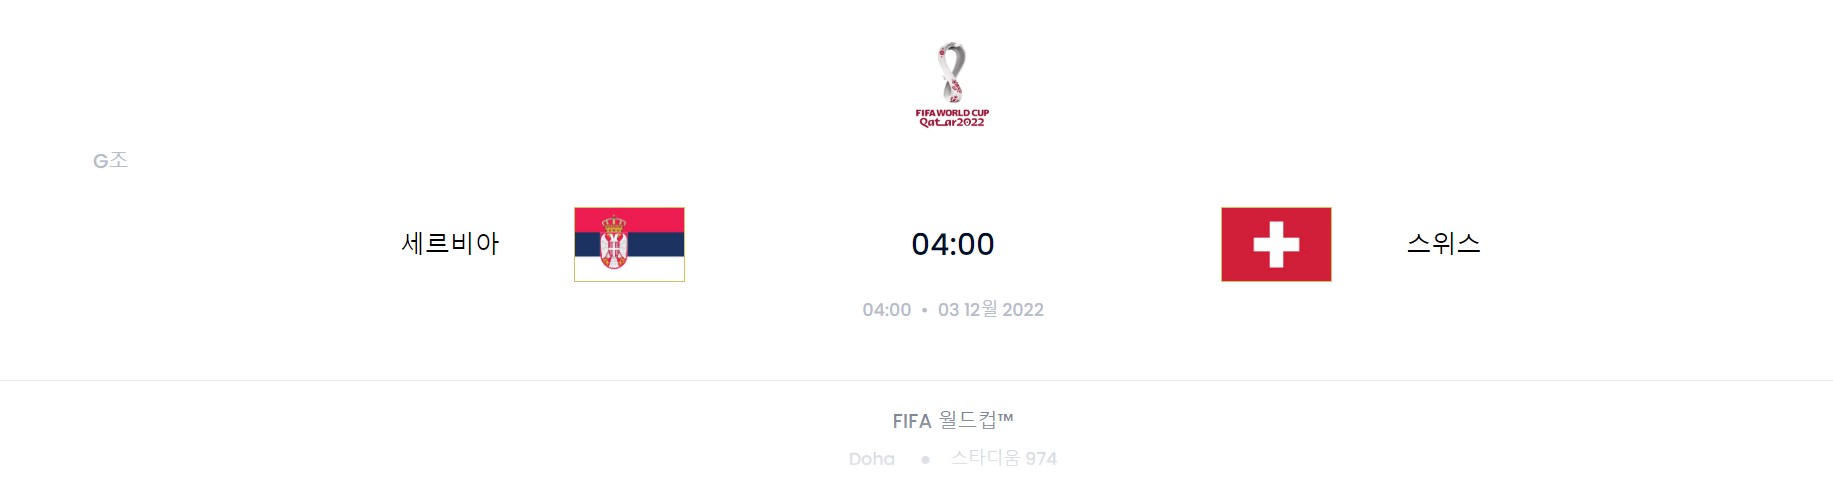 카타르 월드컵 G조 6경기 (스위스 VS 세르비아)